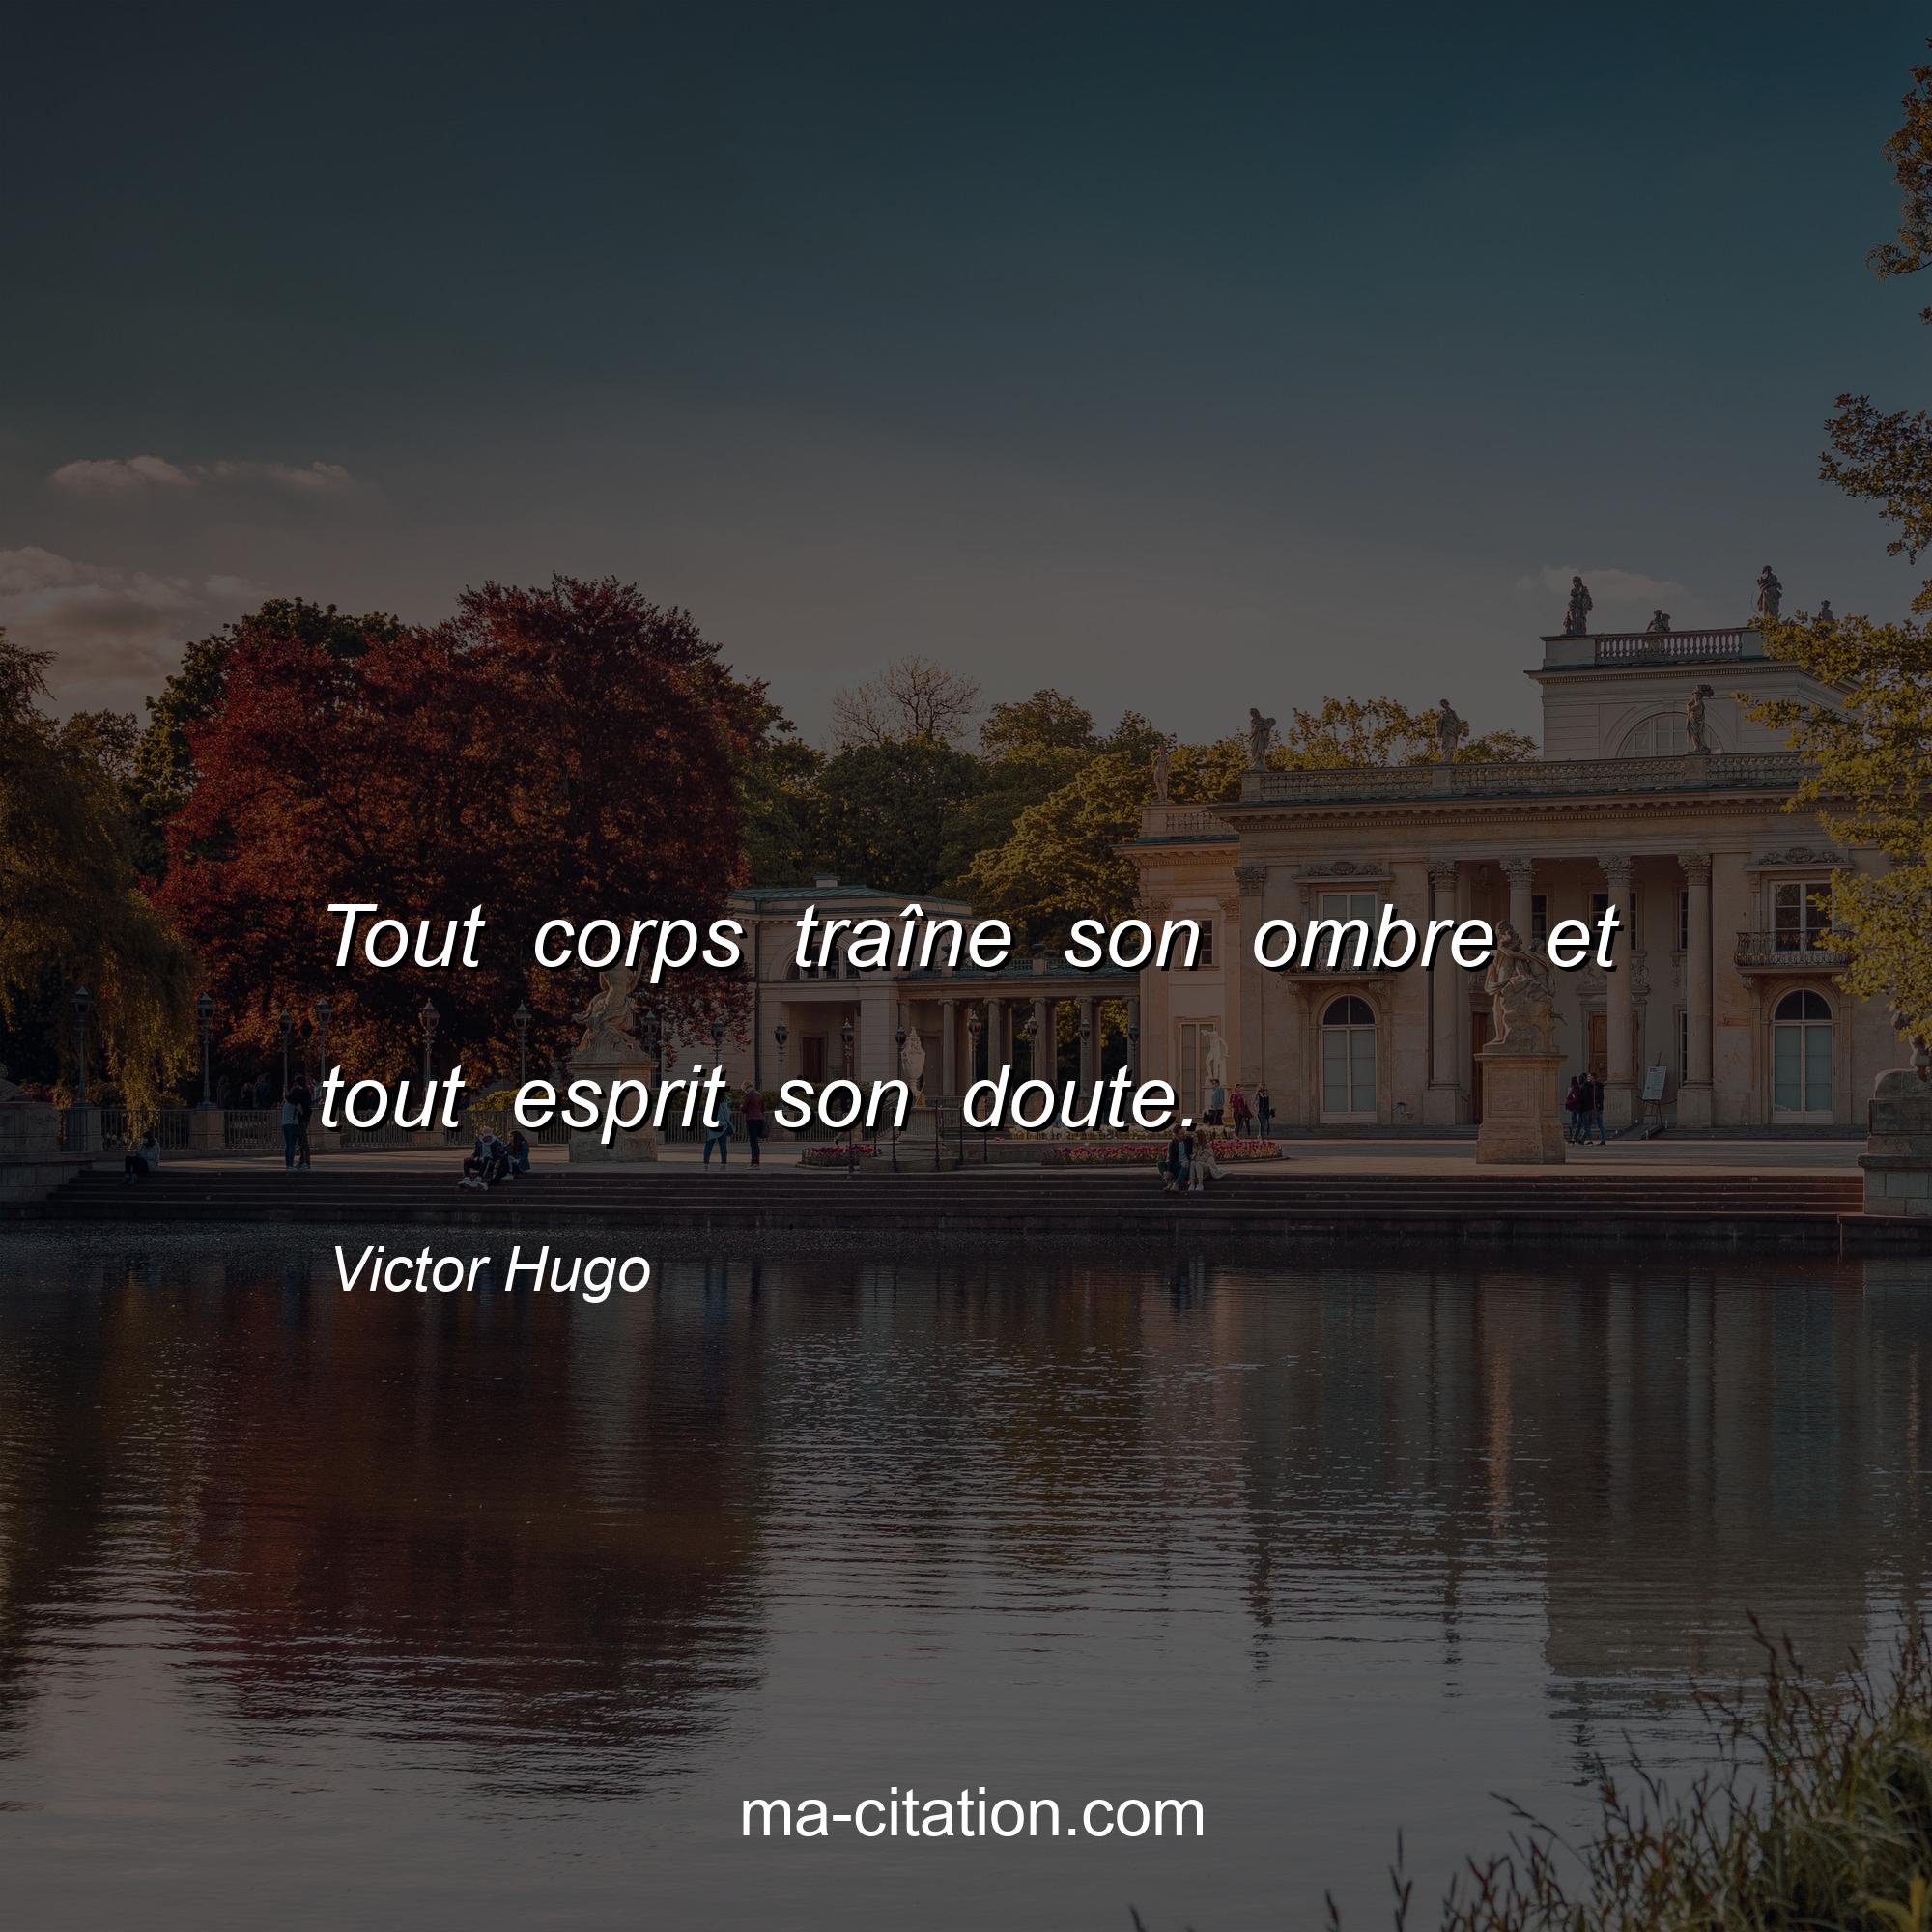 Victor Hugo : Tout corps traîne son ombre et tout esprit son doute.